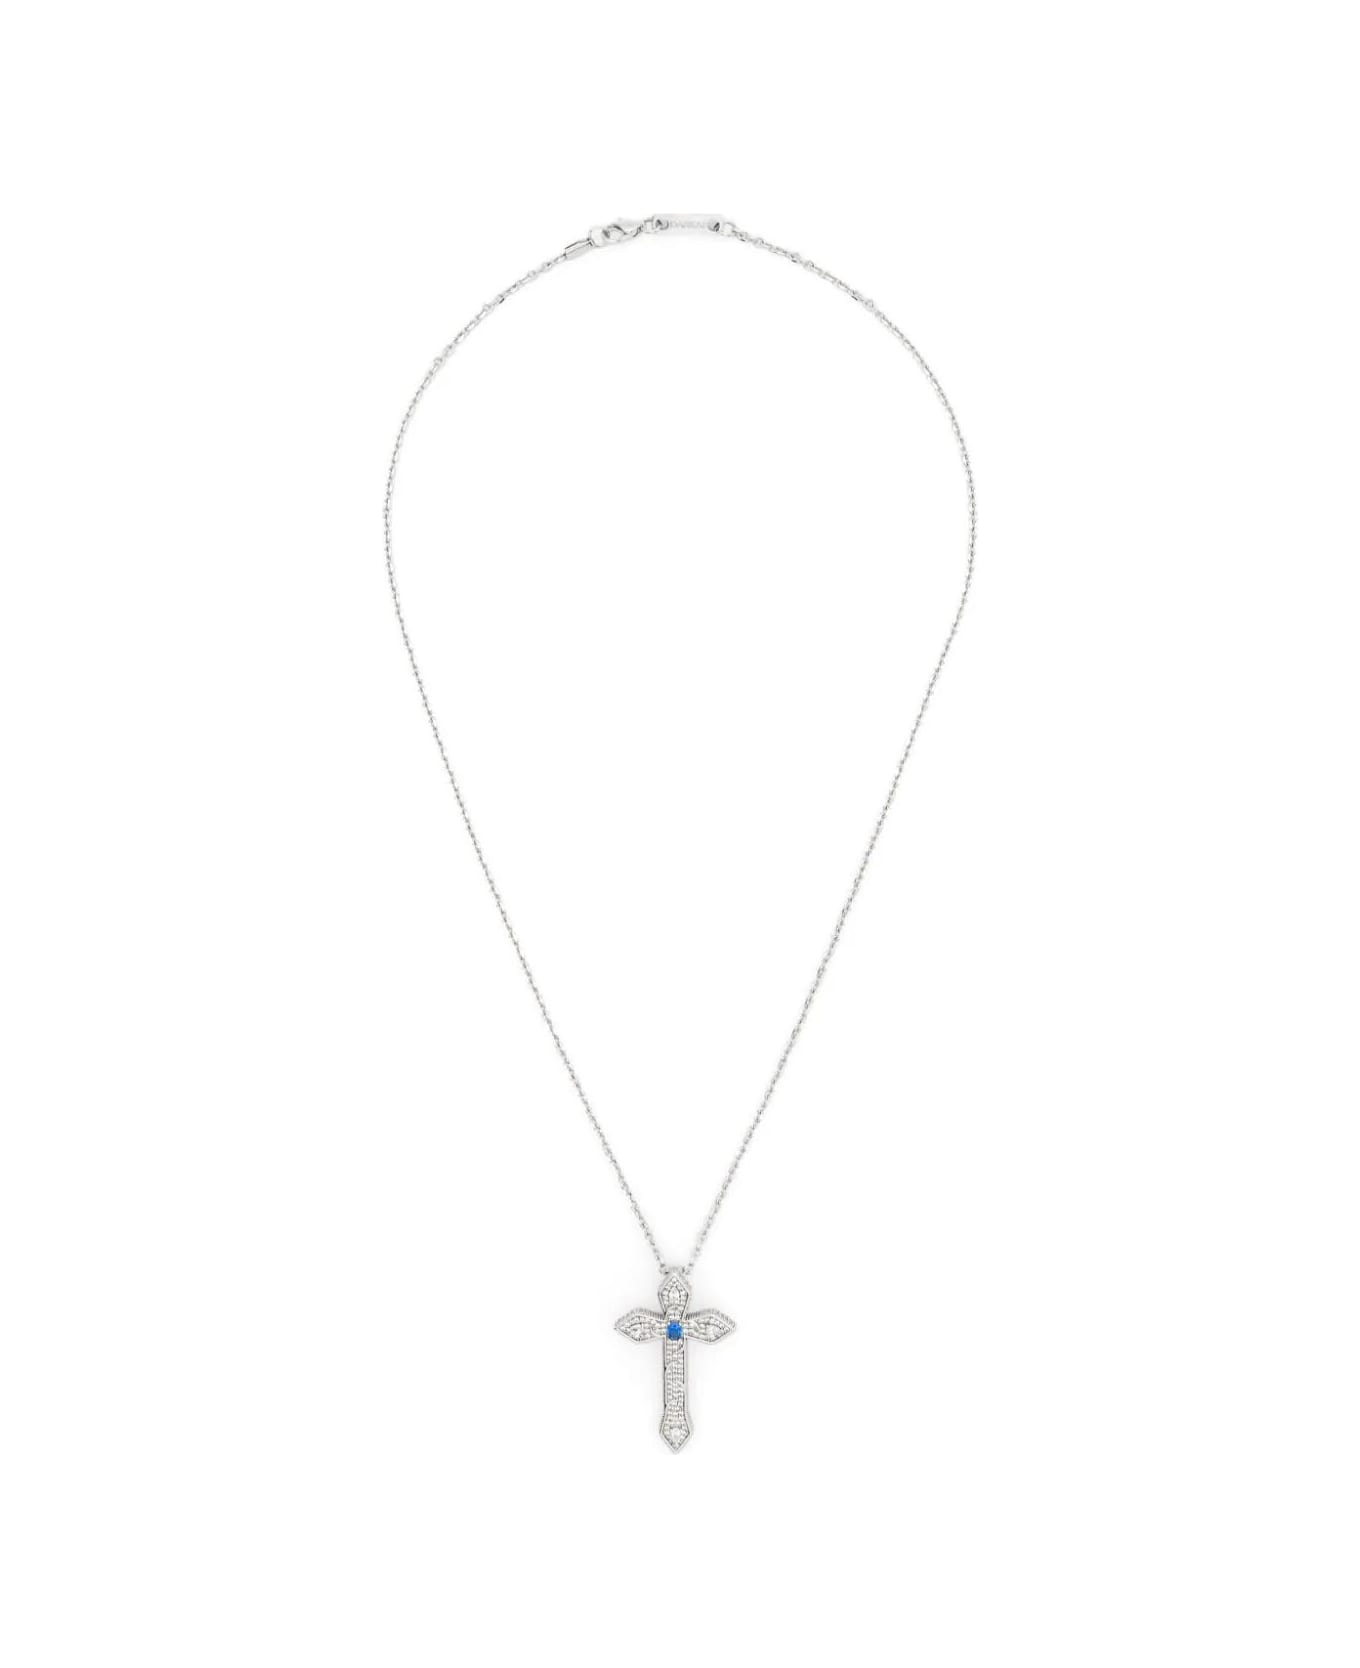 Darkai Gothic Cross Necklace - White